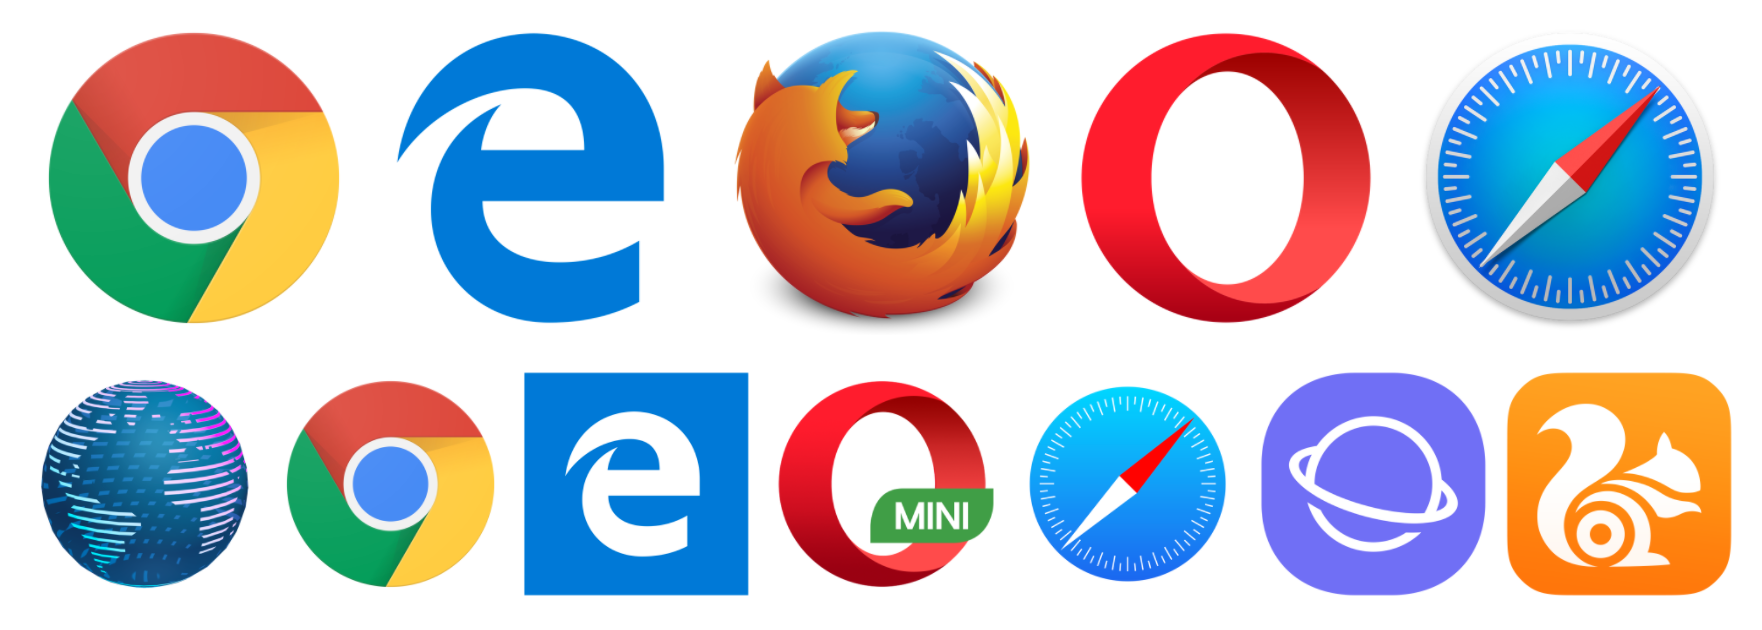 Браузер картинки. Разные браузеры. Логотипы браузеров. Иконки популярных браузеров. Сайт для скачивания браузеров